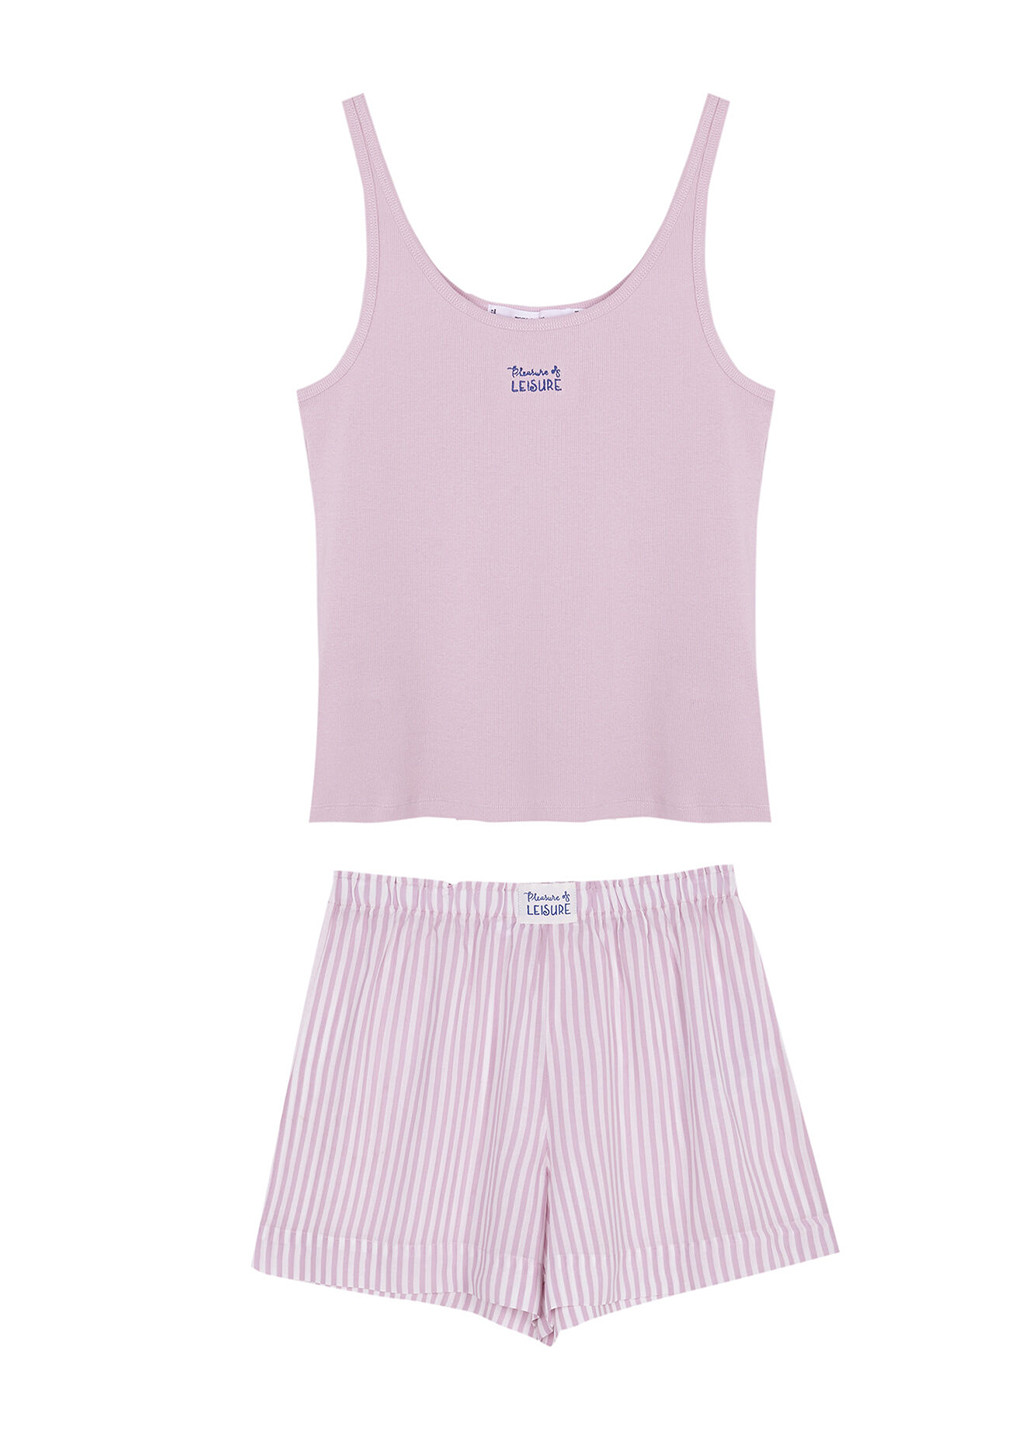 Светло-розовая всесезон пижама (майка, шорты) майка + шорты Women'secret